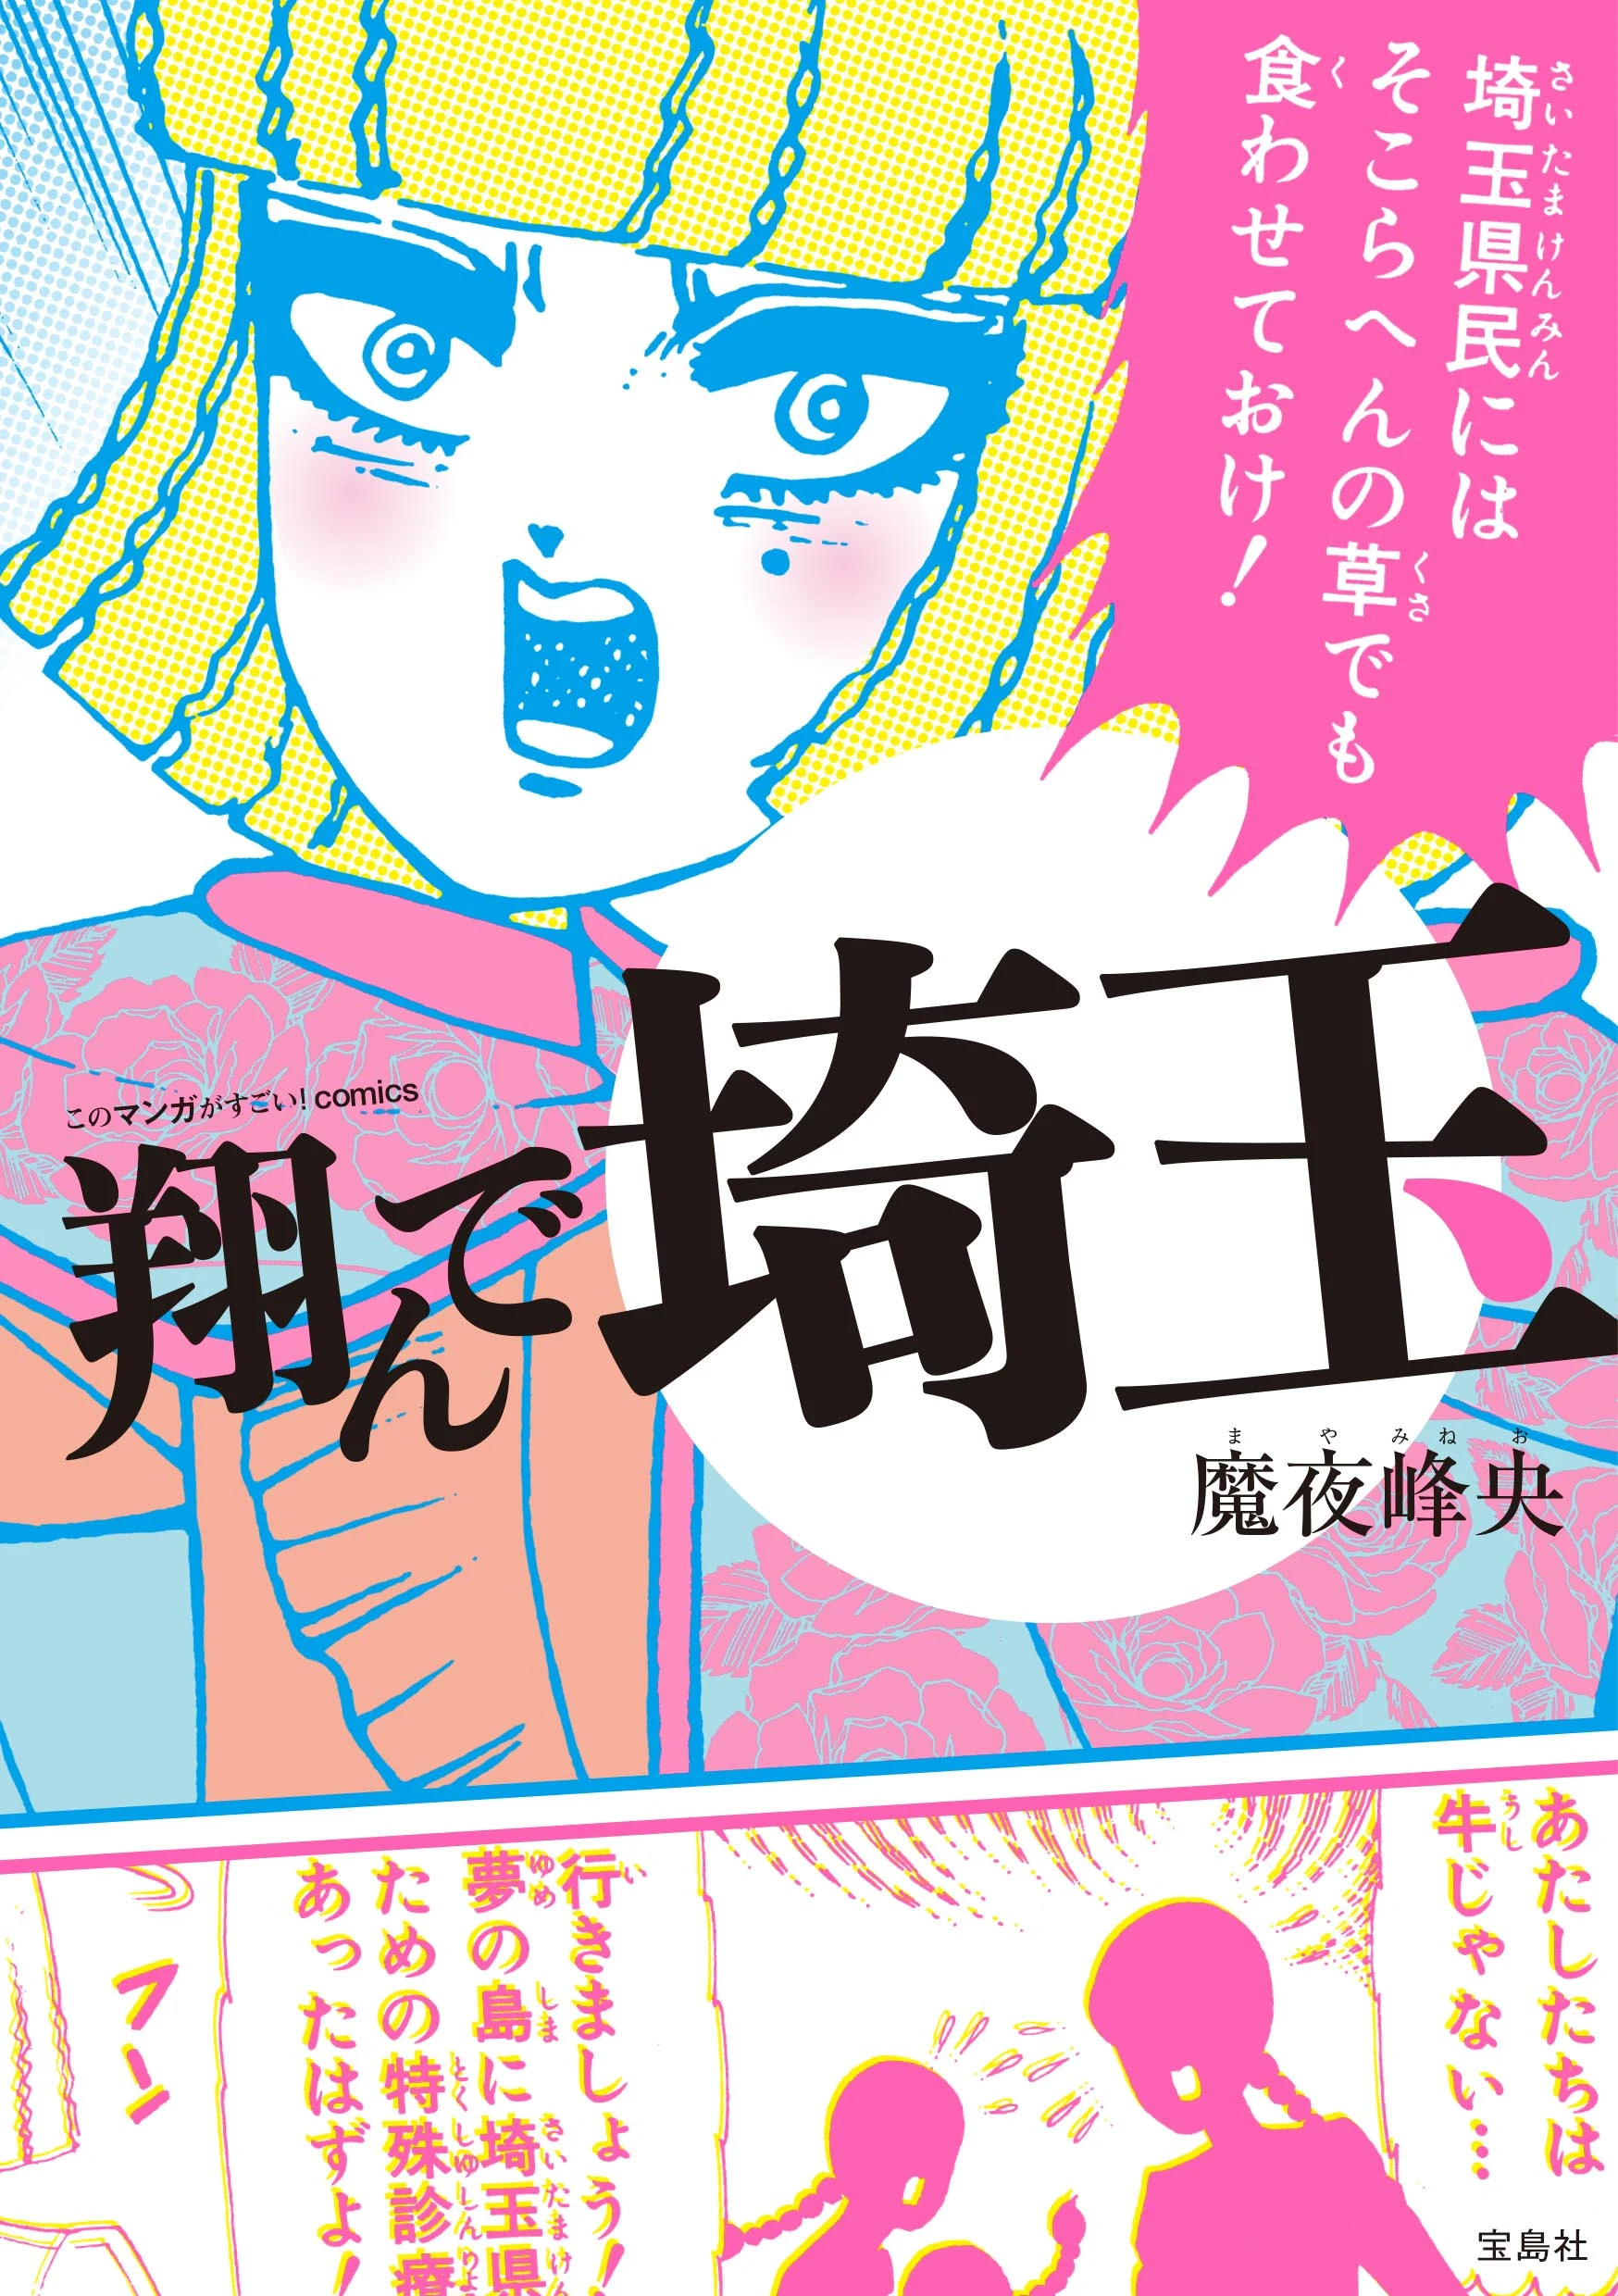 埼玉県ディス漫画『翔んで埼玉』映画化　二階堂ふみとGACKTがBLに挑戦